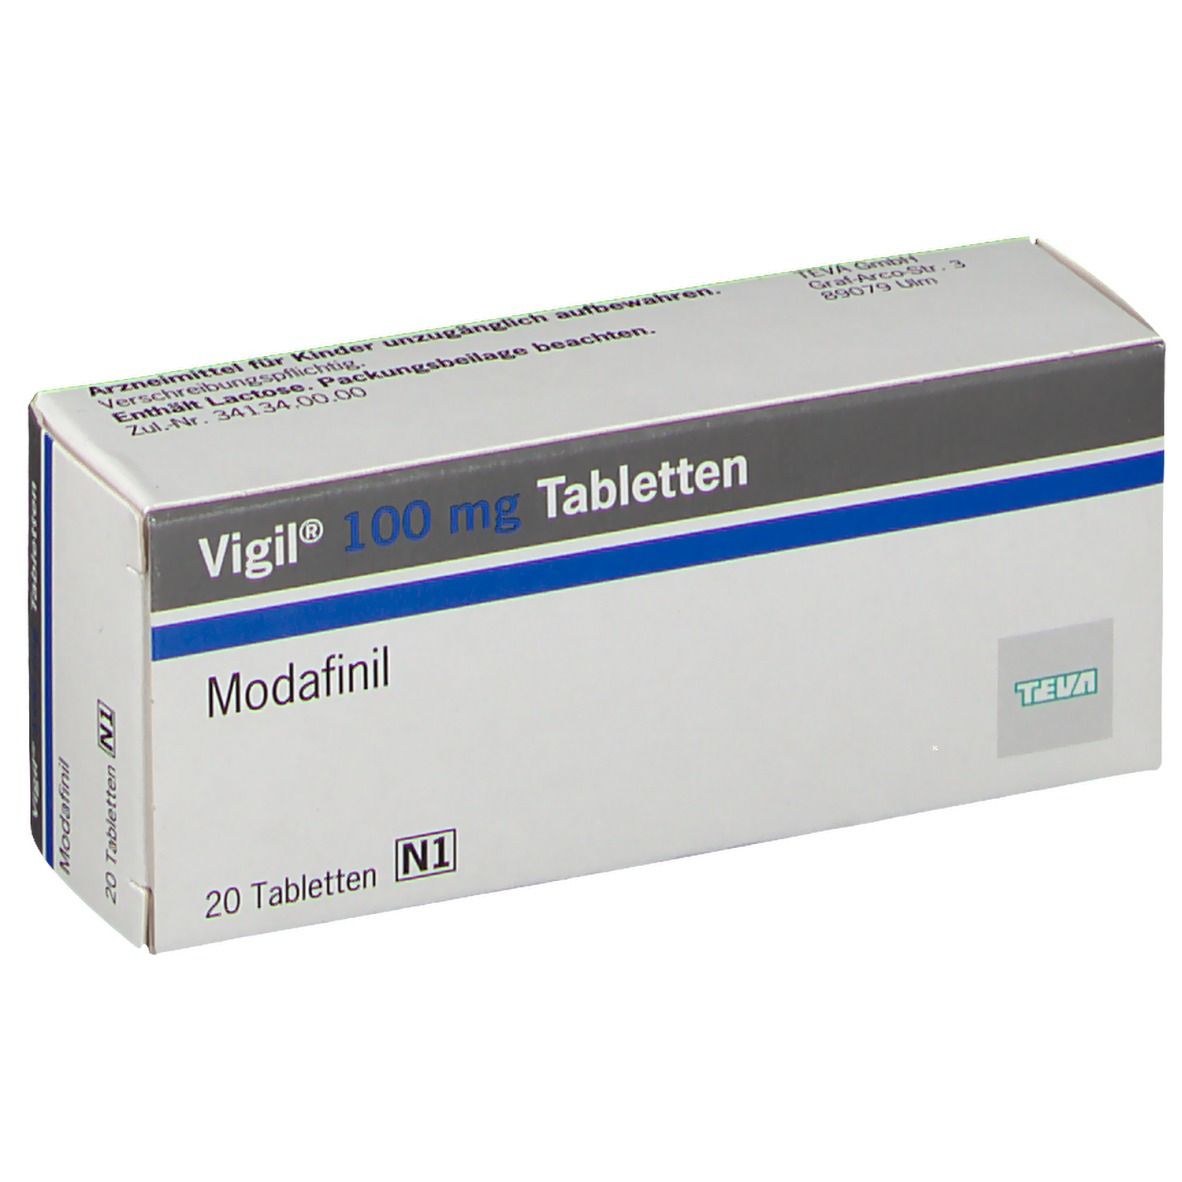 Vigil® 100 mg